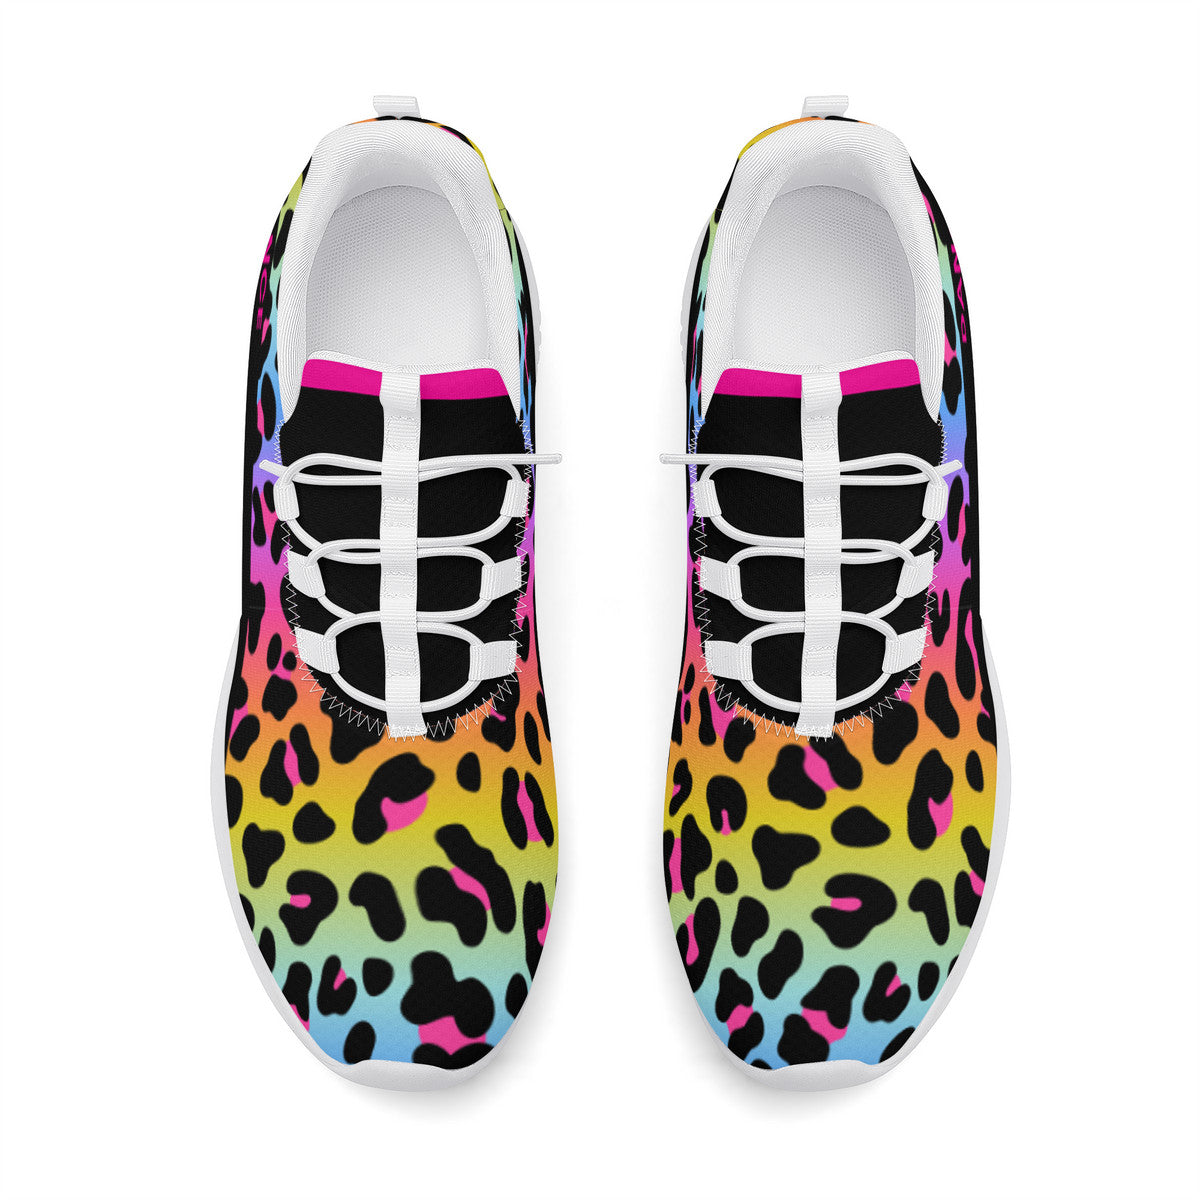 Dance Sneakers- Multi Color Leopard Print Dance Shoes